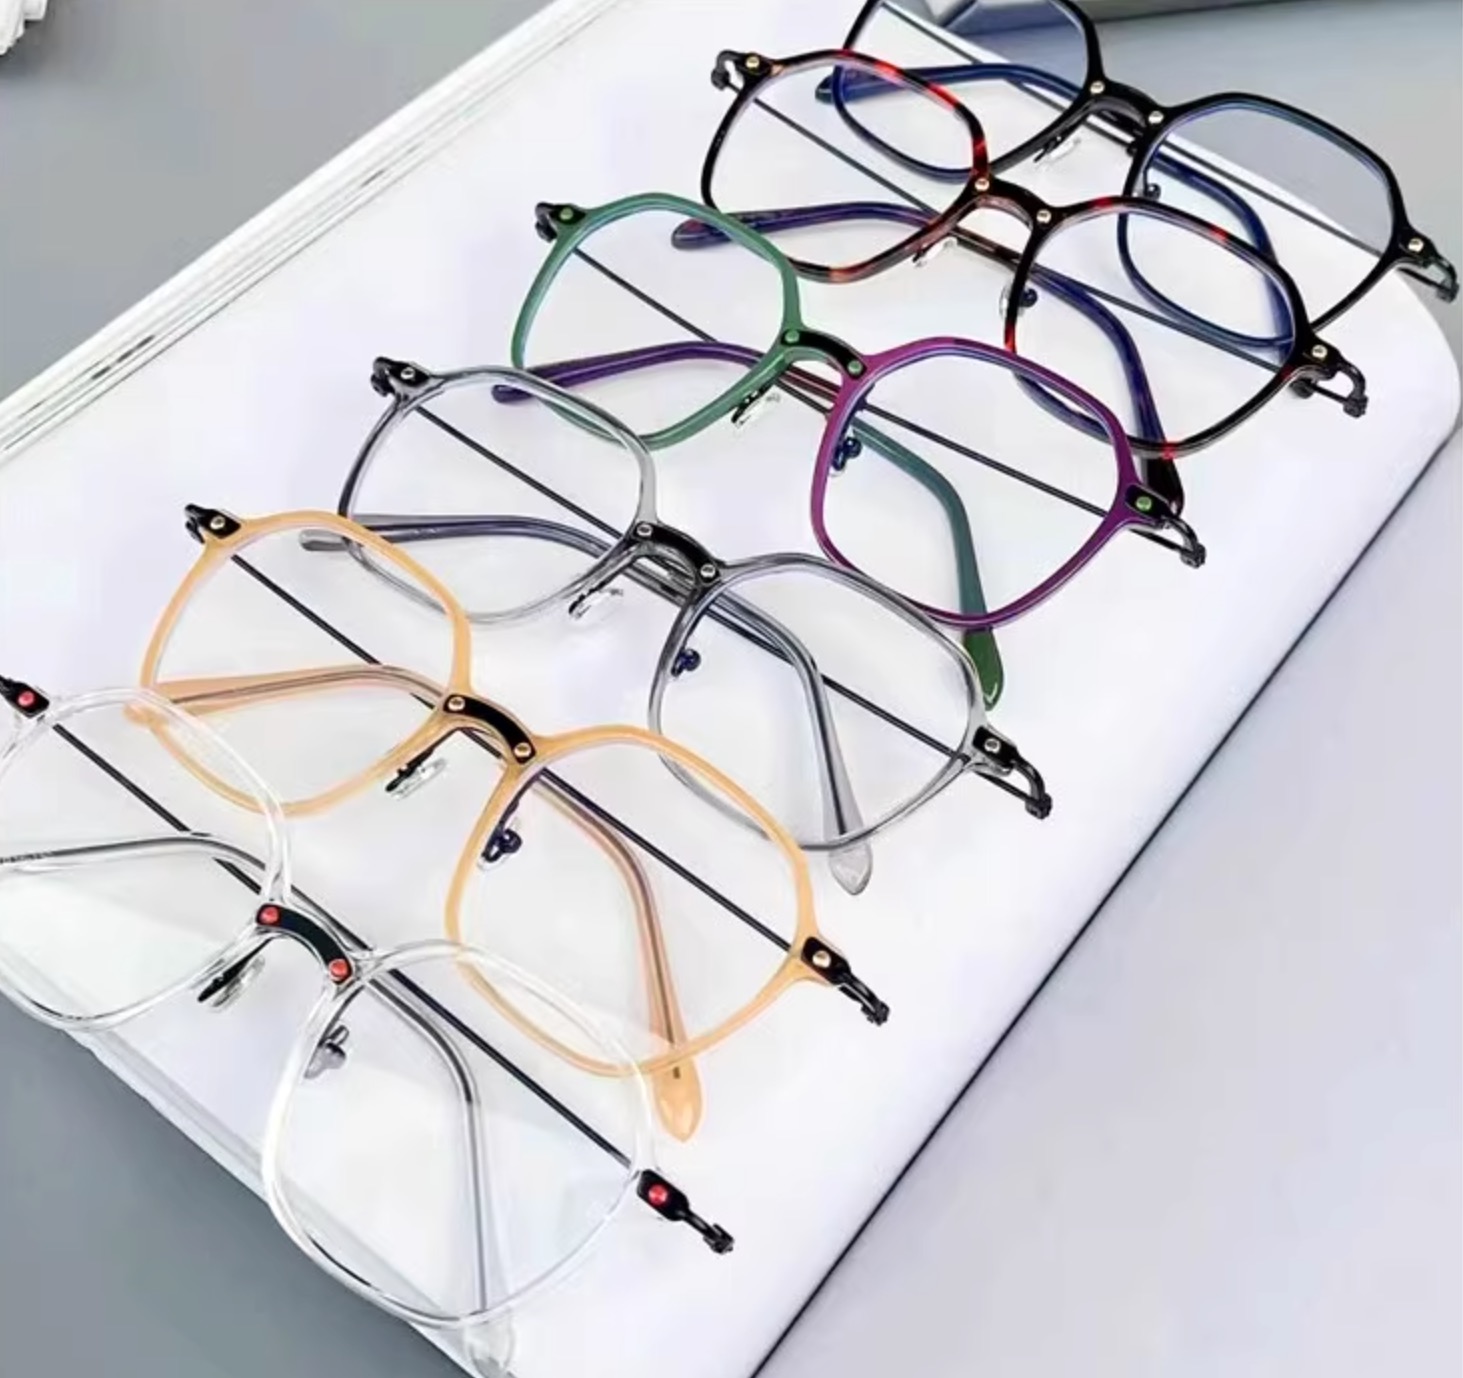 日本個性的伊達メガネ ブランド多角形度なしレンズ可愛いメガネ フレーム カタログ